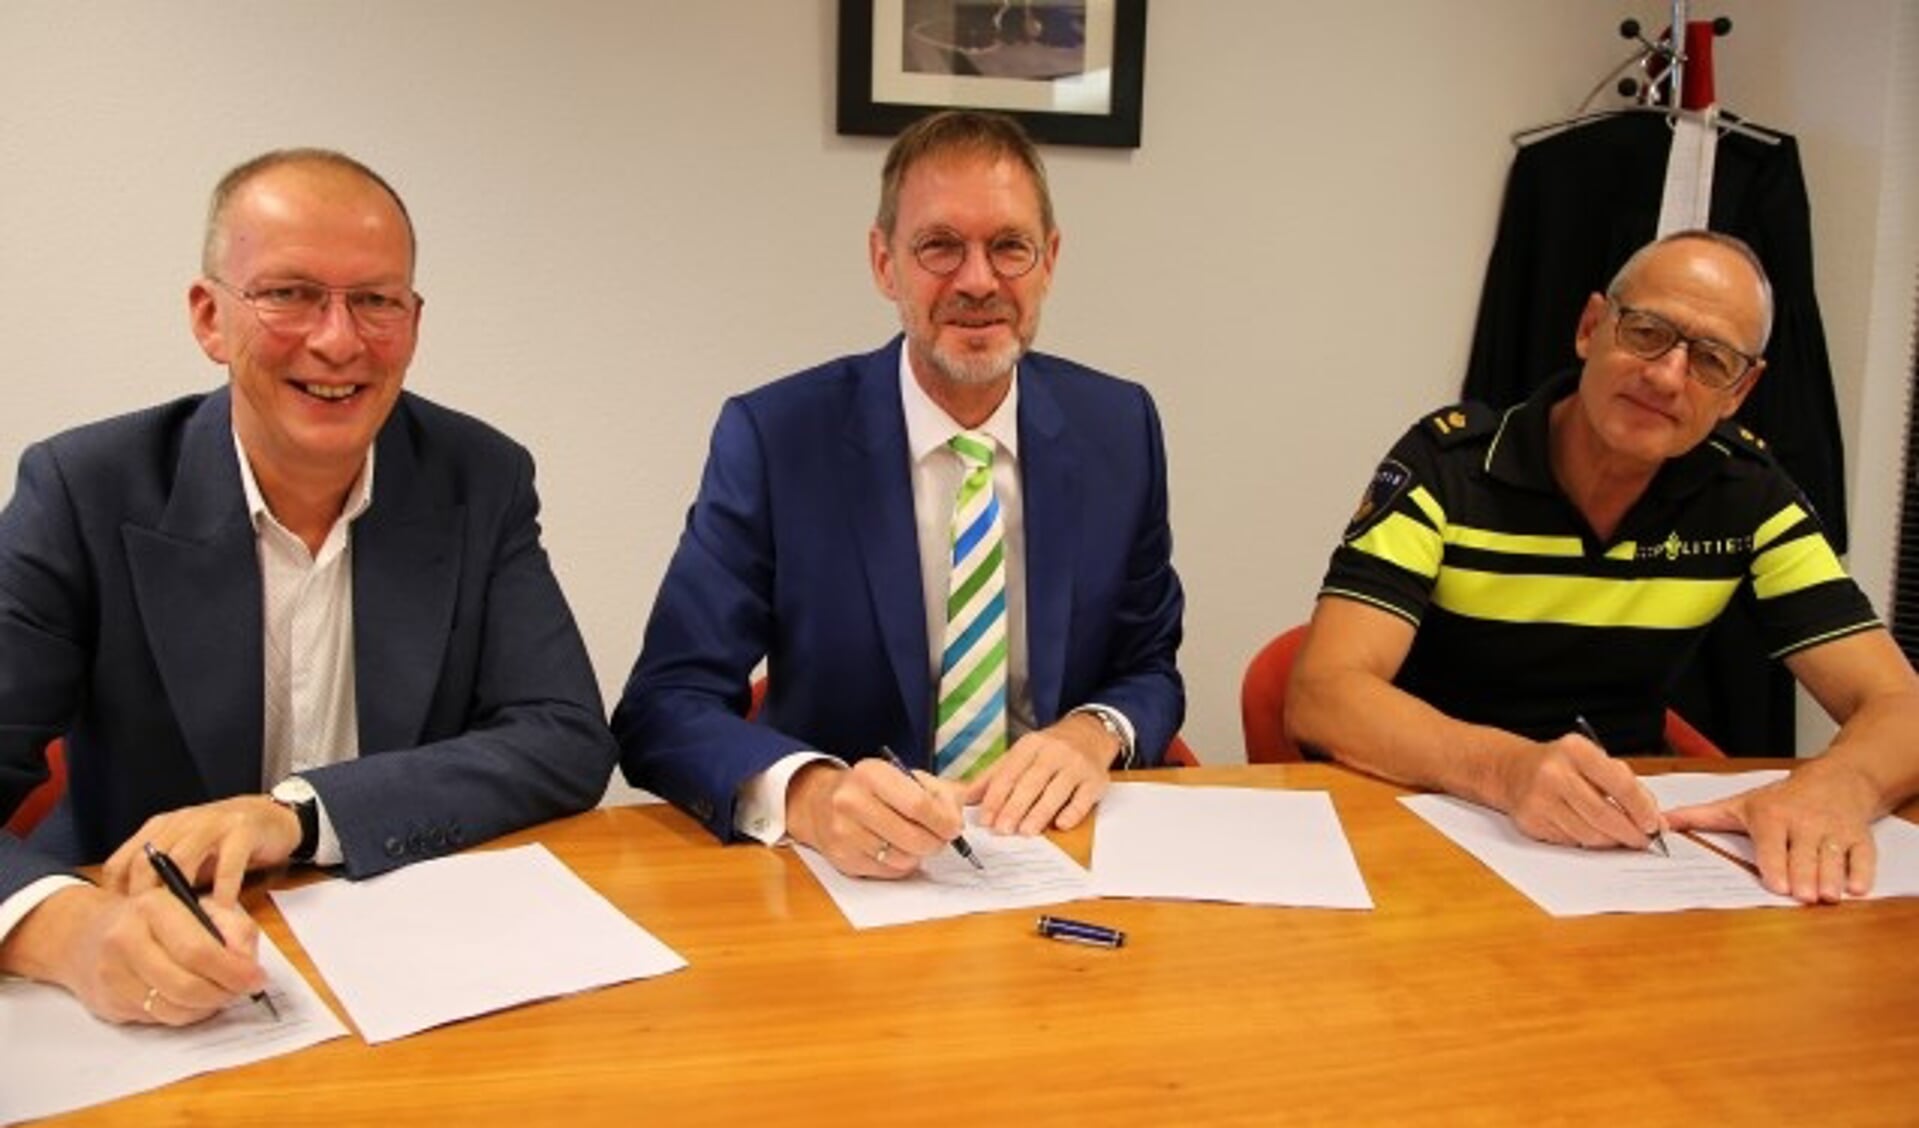 De gemeente Oudewater, de politie en Kwadraad zetten hun handtekeningen onder de samenwerkingsovereenkomst. 